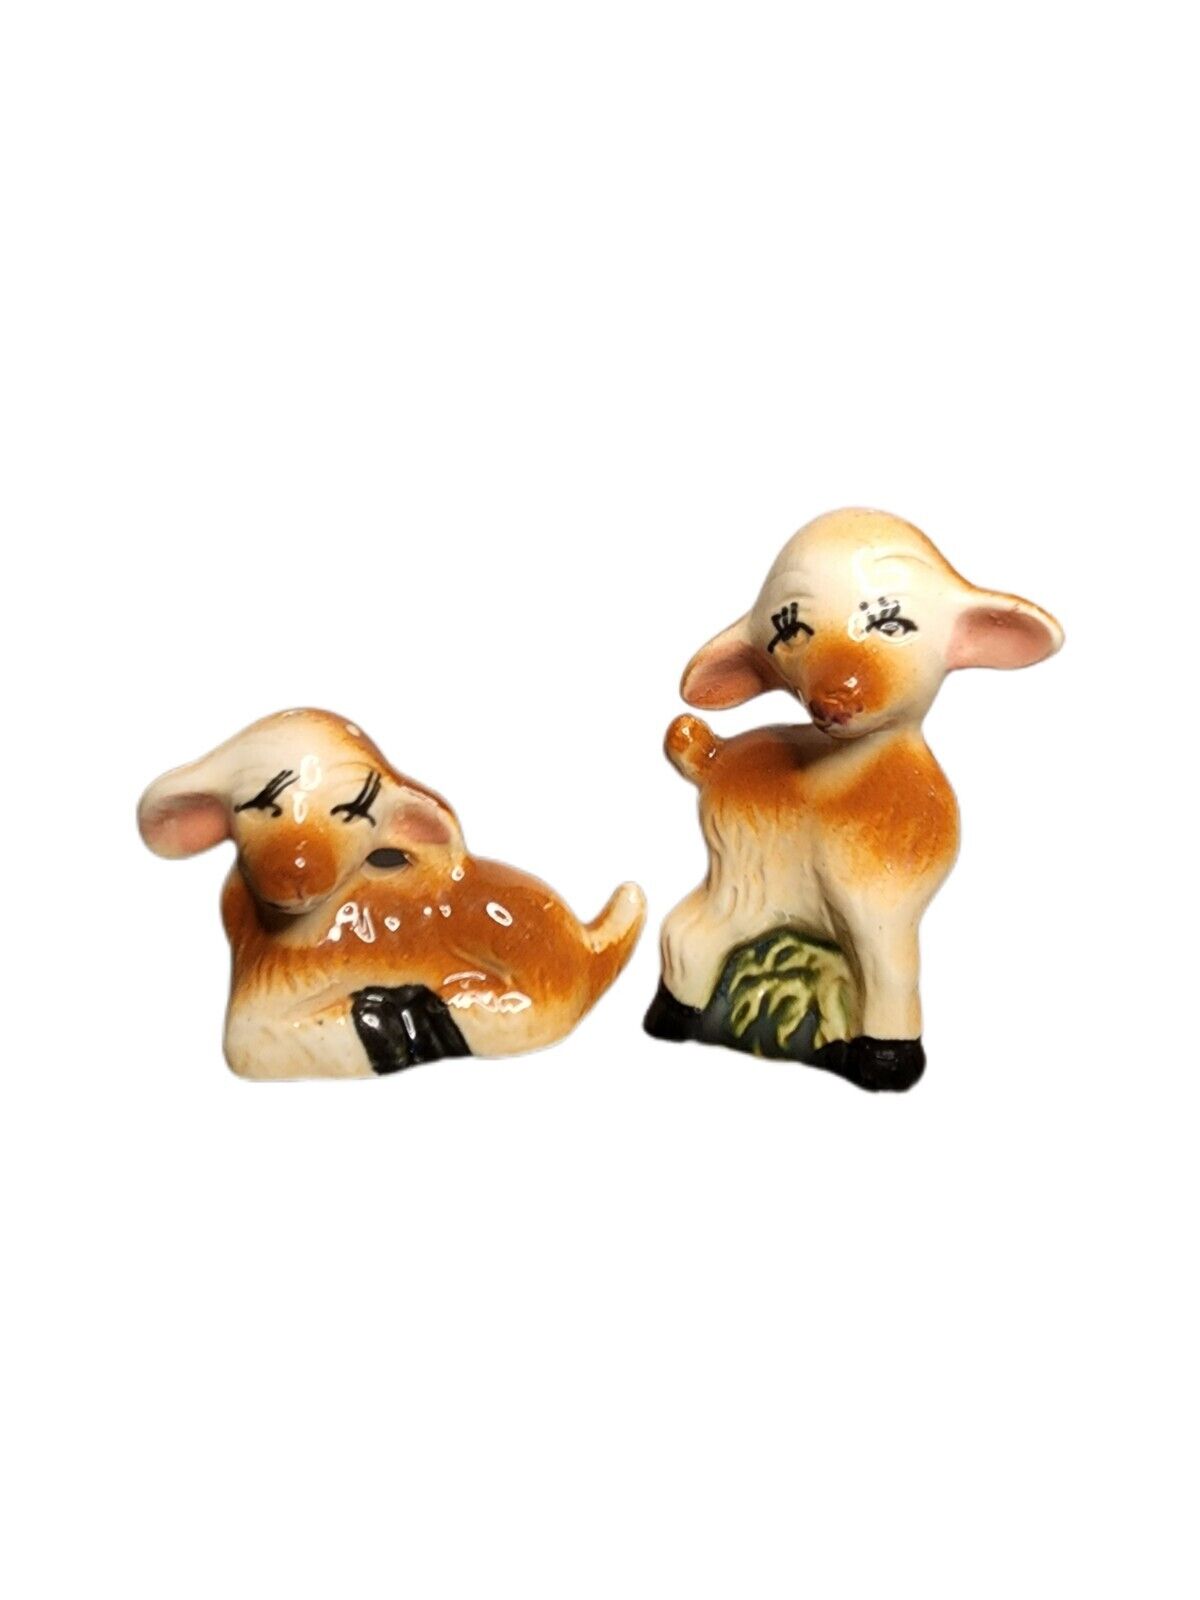 Vtg Deer Anthropomorphic Salt & Pepper Shaker Set Big Eyelashes & Ears Japan